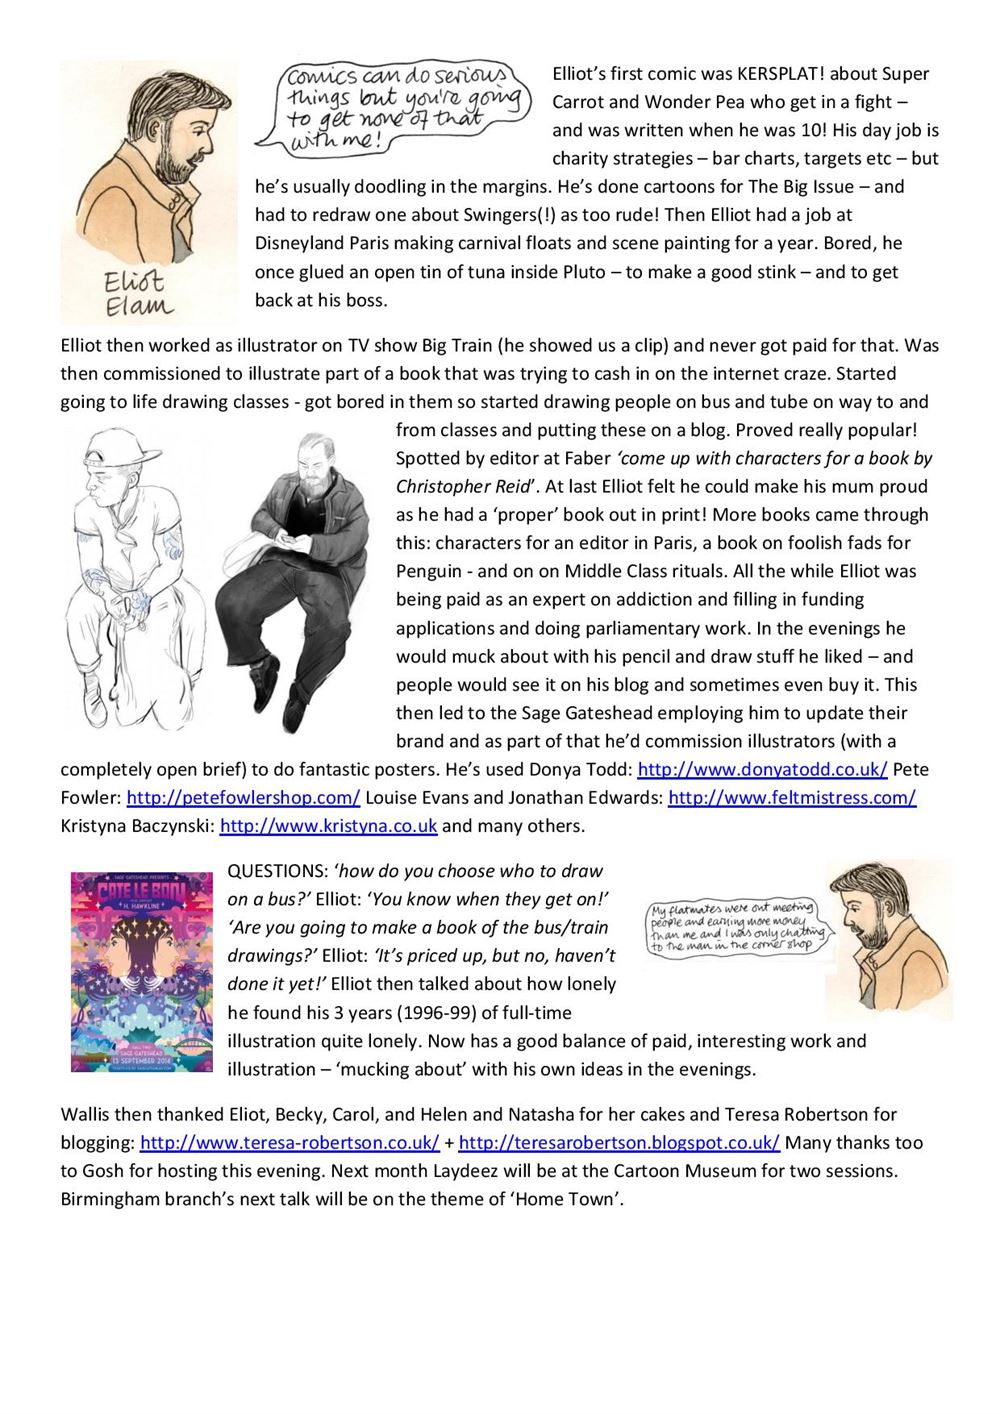 Laydeez do comics blog, corrected-page-003